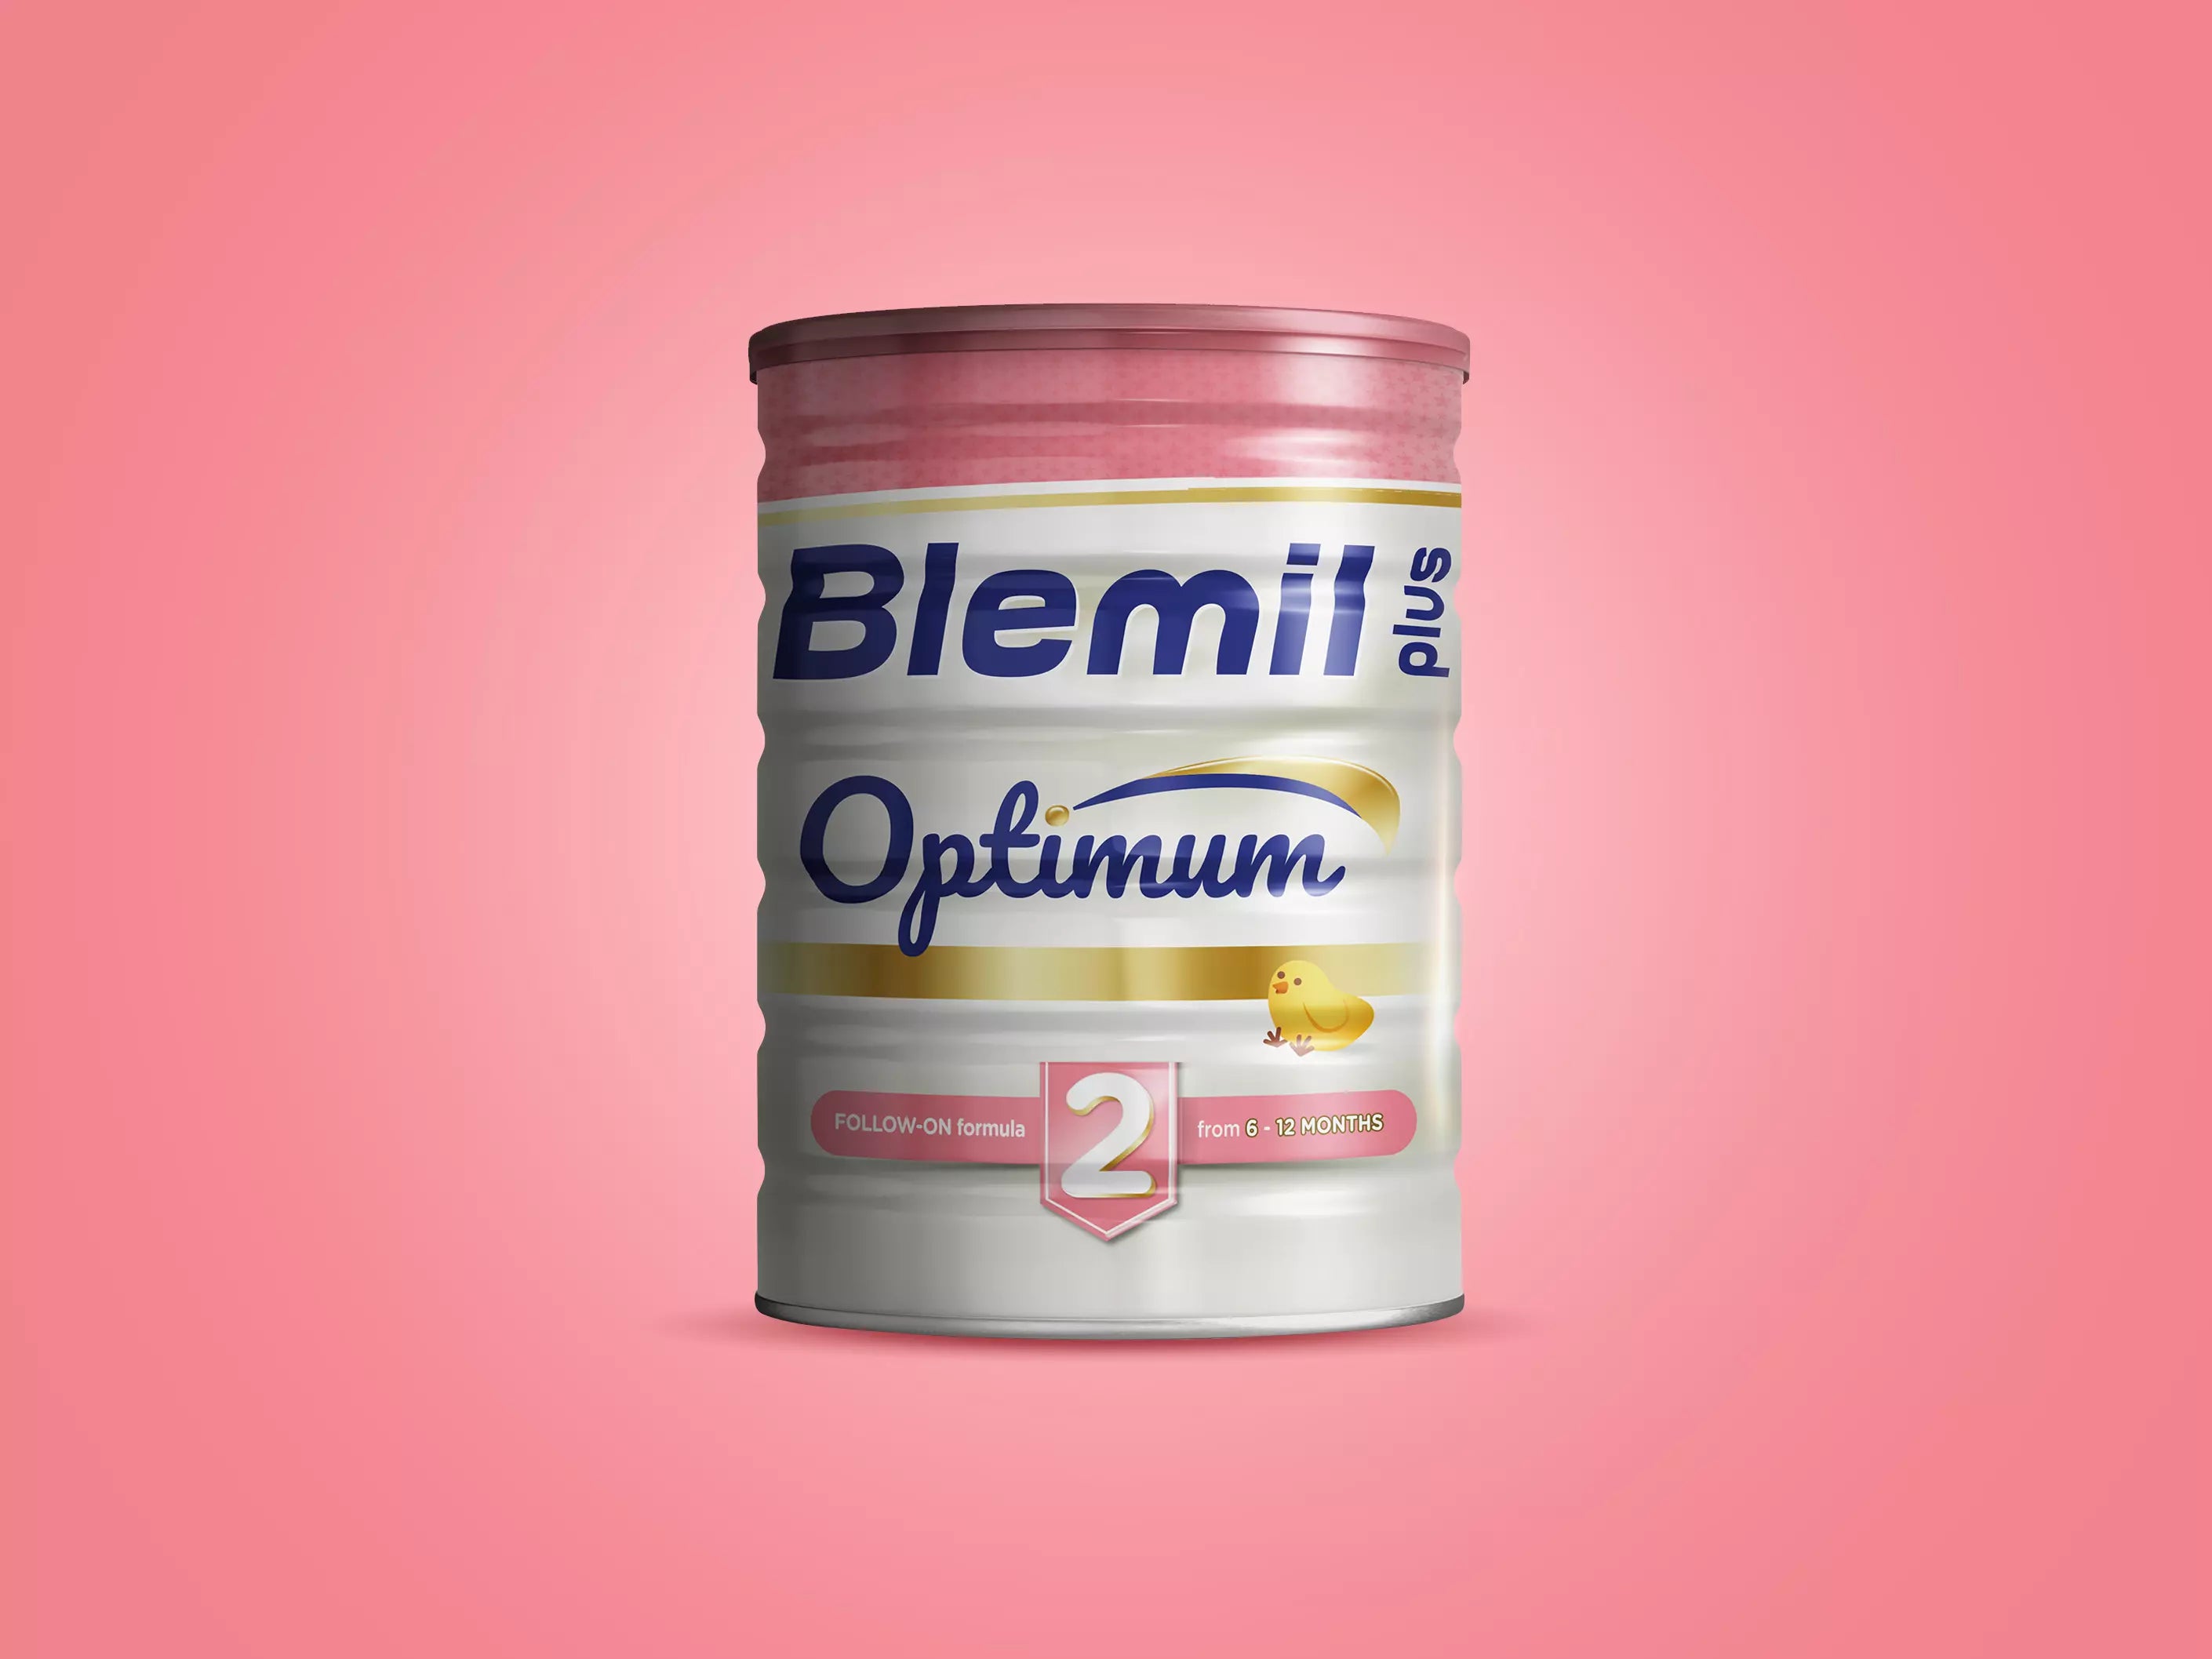 Blemil plus optimum 2 + blemil plus optimum 3 (bipack 800 g + 400 g)